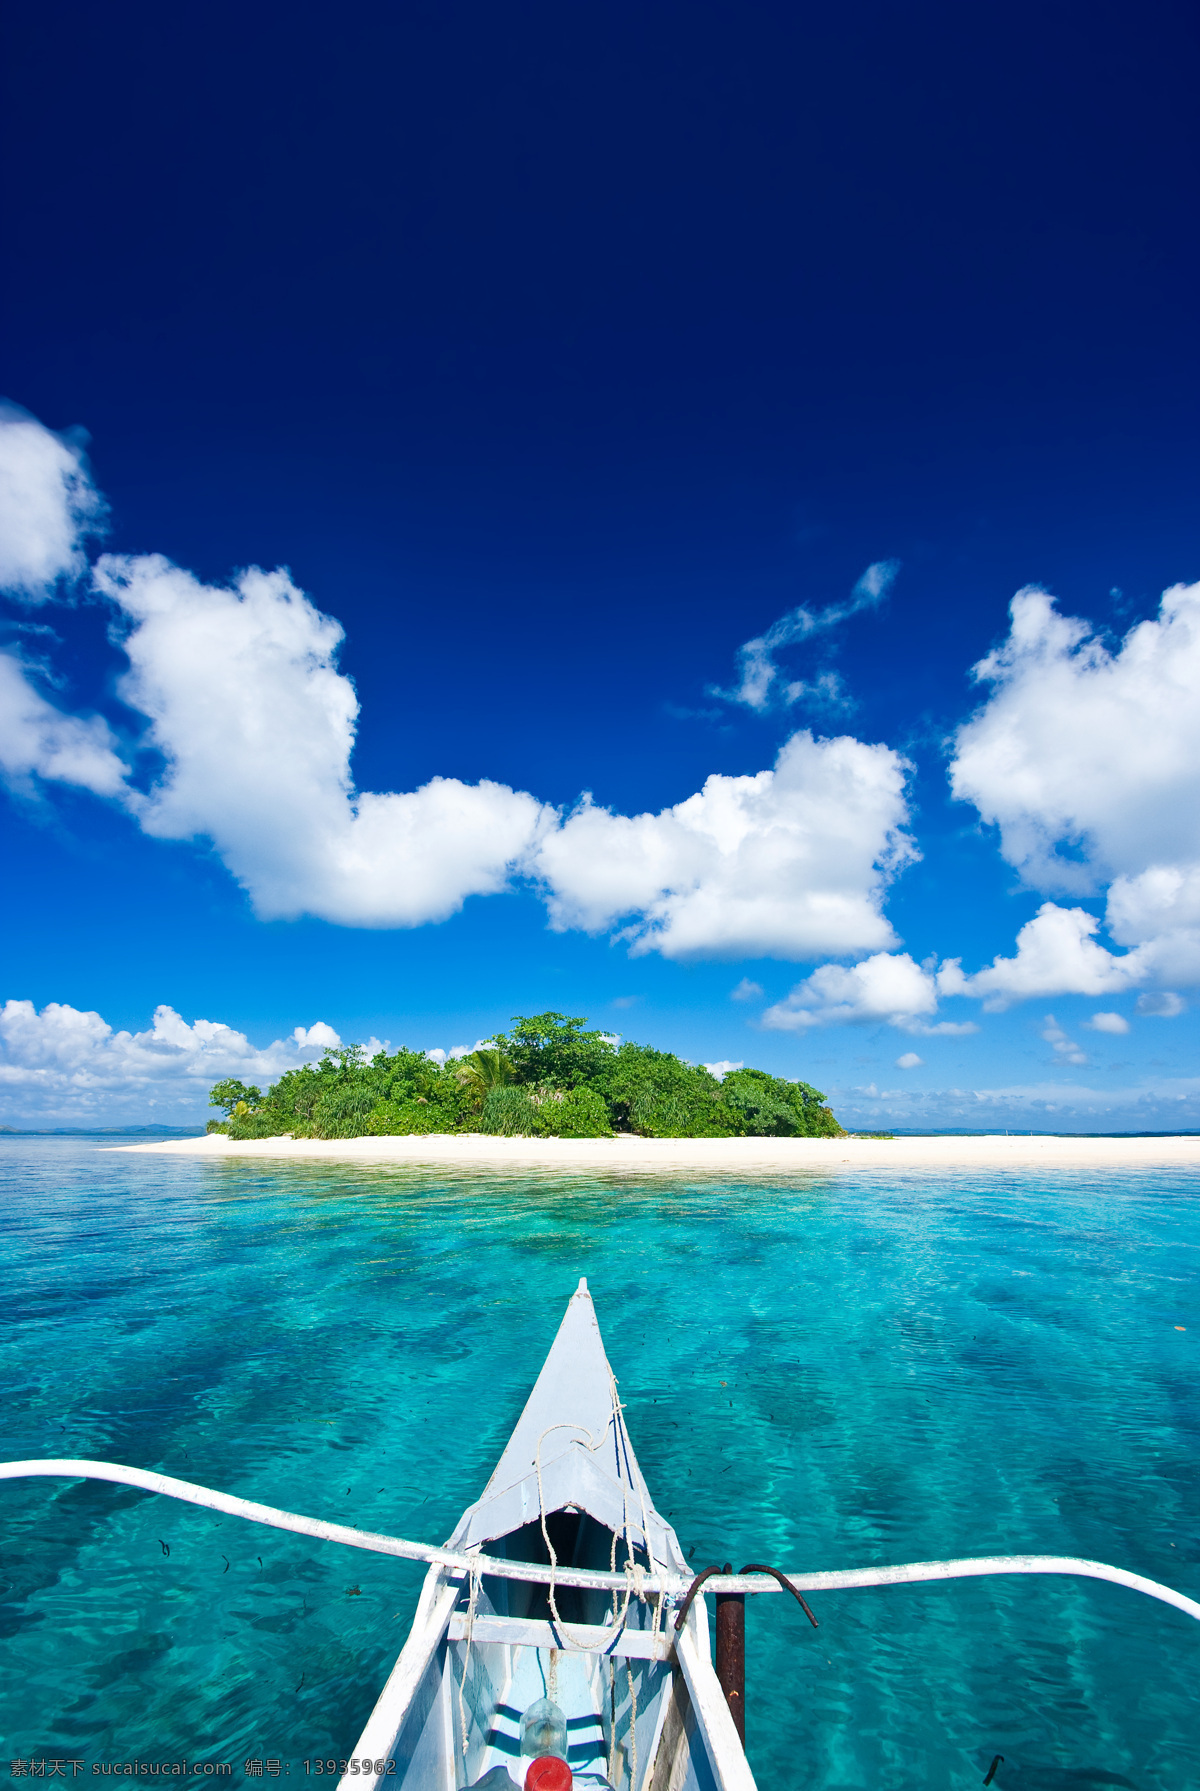 菲律宾 萨 马岛 旅游度假 海景 菲律宾萨马岛 旅游 度假 风景 海边 沙滩 小船 阳光 蓝天白云 夕阳 落日 朝阳 岛屿 小岛 东南亚 自然风景 旅游摄影